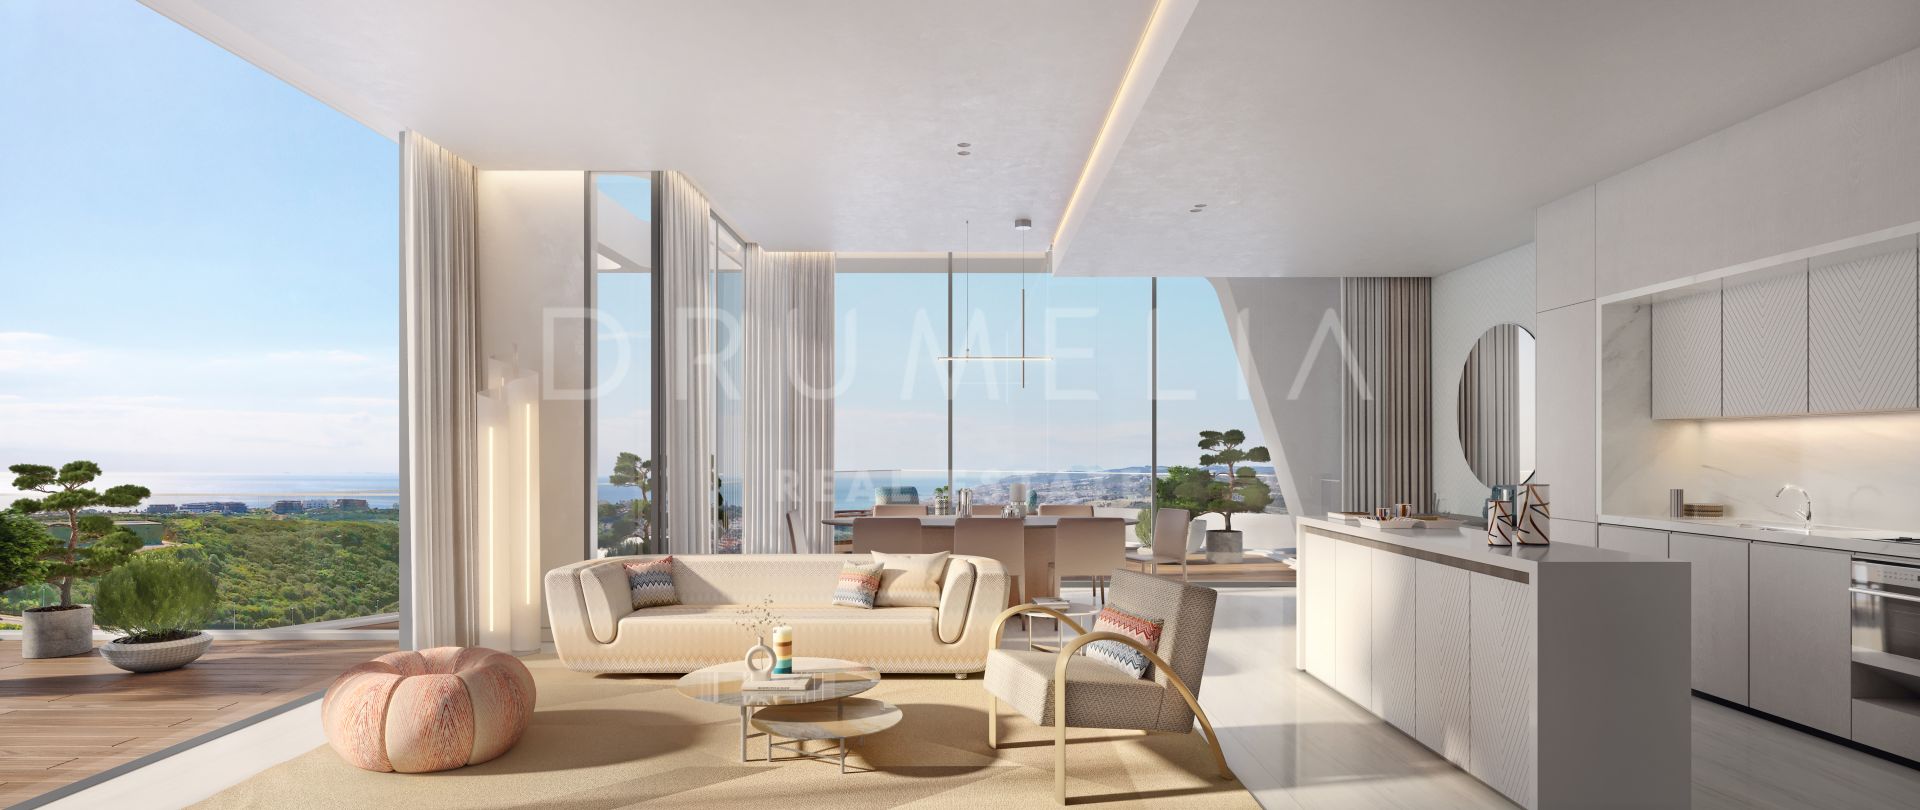 Niezwykły, zupełnie nowy, luksusowy, designerski apartament z widokiem na morze w Finca Cortesin, Casares